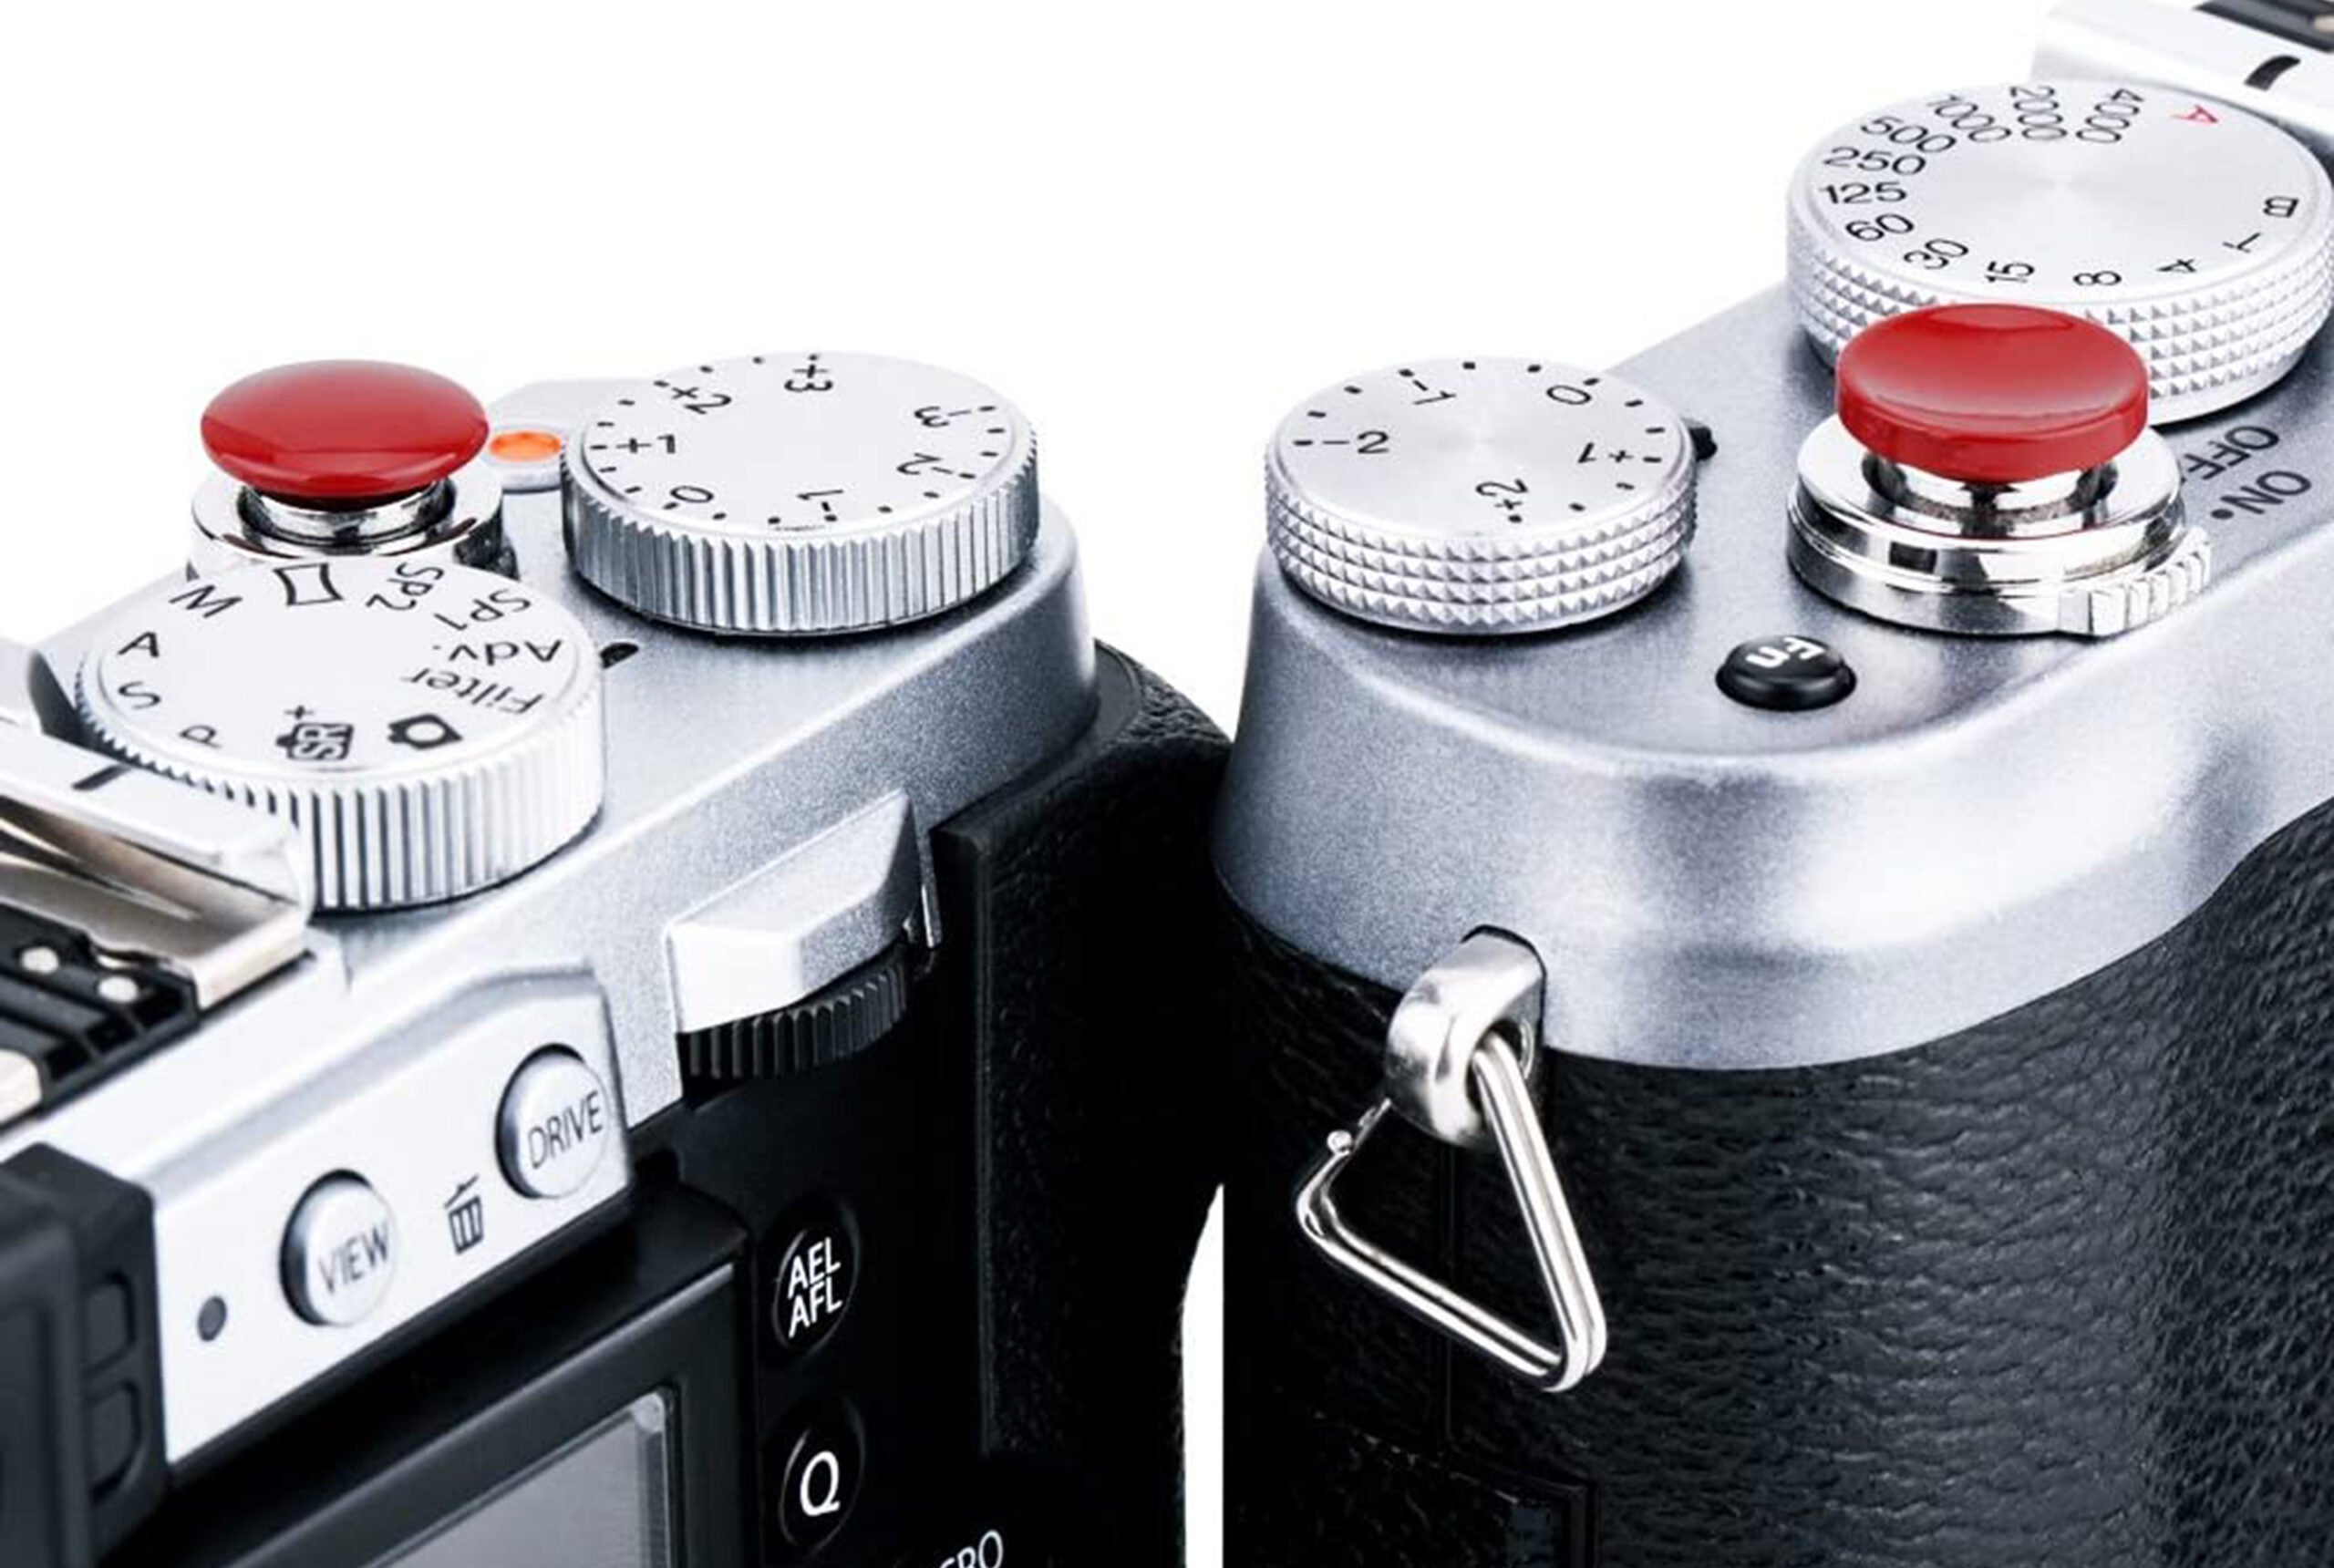 Custom SLR ProDot Shutter soft release is the best gift for photographers.